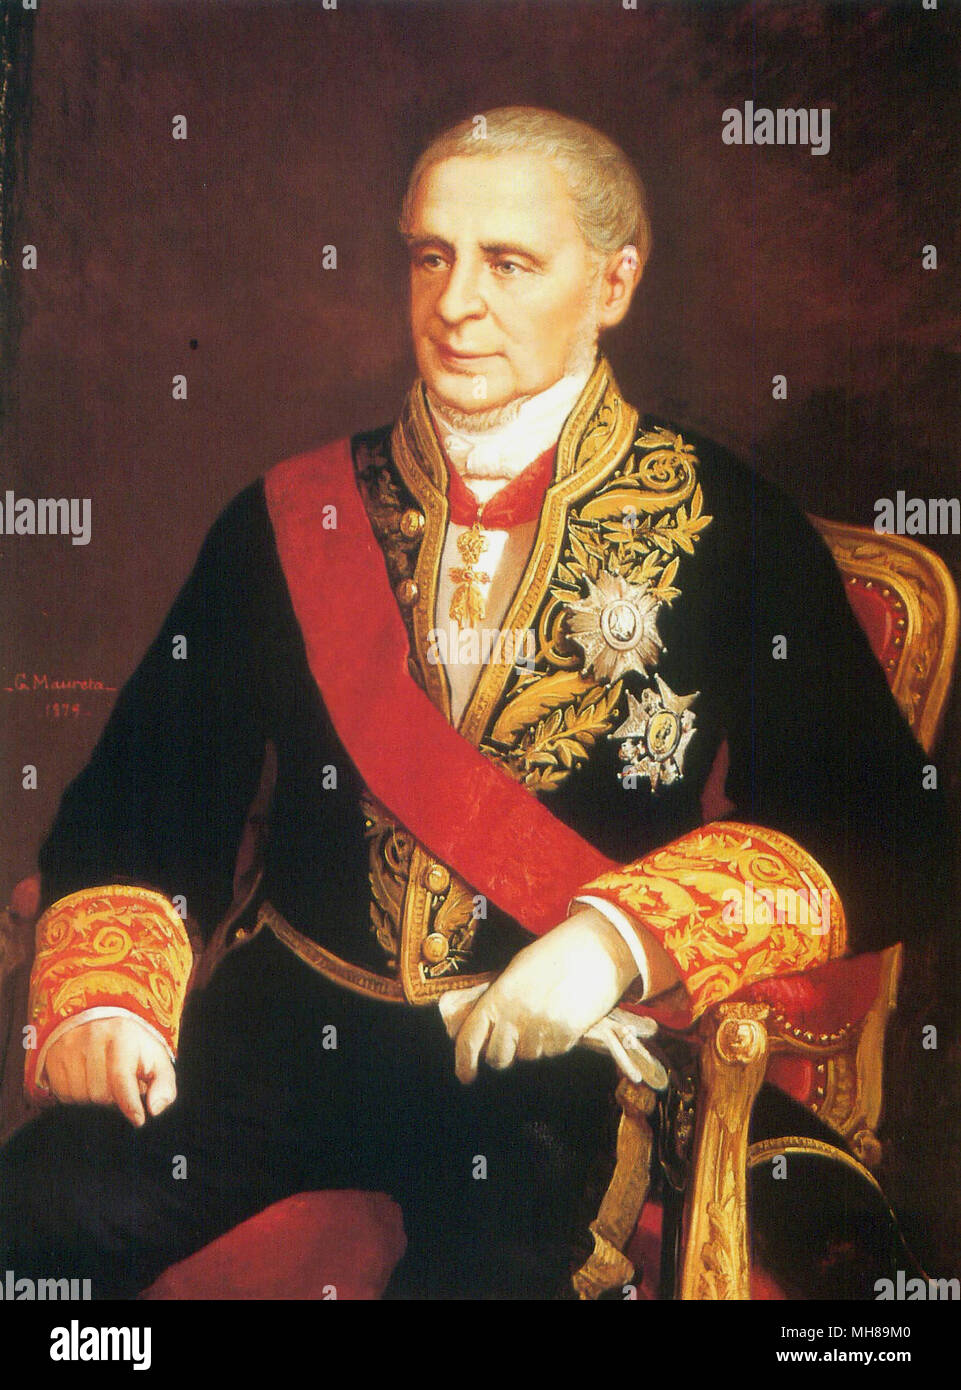 Don Manuel de Pando y Fernández de Pinedo, 6 Marquis von Miraflores Granden von Spanien und 4 Graf von la Ventosa (1792-1872) spanischer Adliger und Politiker, der diente zwei Mal als Ministerpräsident von Spanien Stockfoto